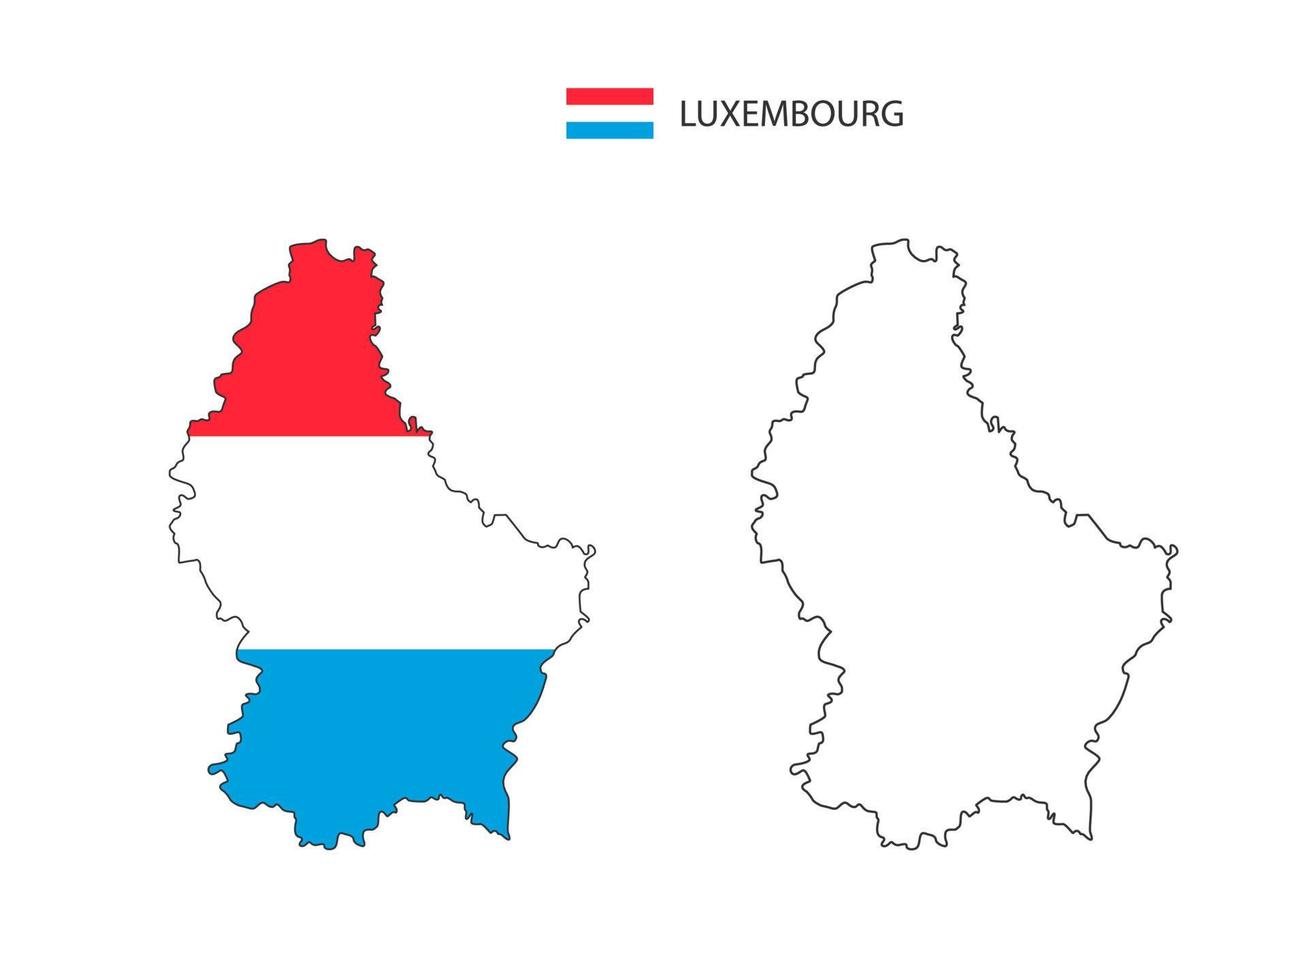 vetor de cidade de mapa de luxemburgo dividido por estilo de simplicidade de contorno. tem 2 versões, versão de linha fina preta e cor da versão da bandeira do país. ambos os mapas estavam no fundo branco.